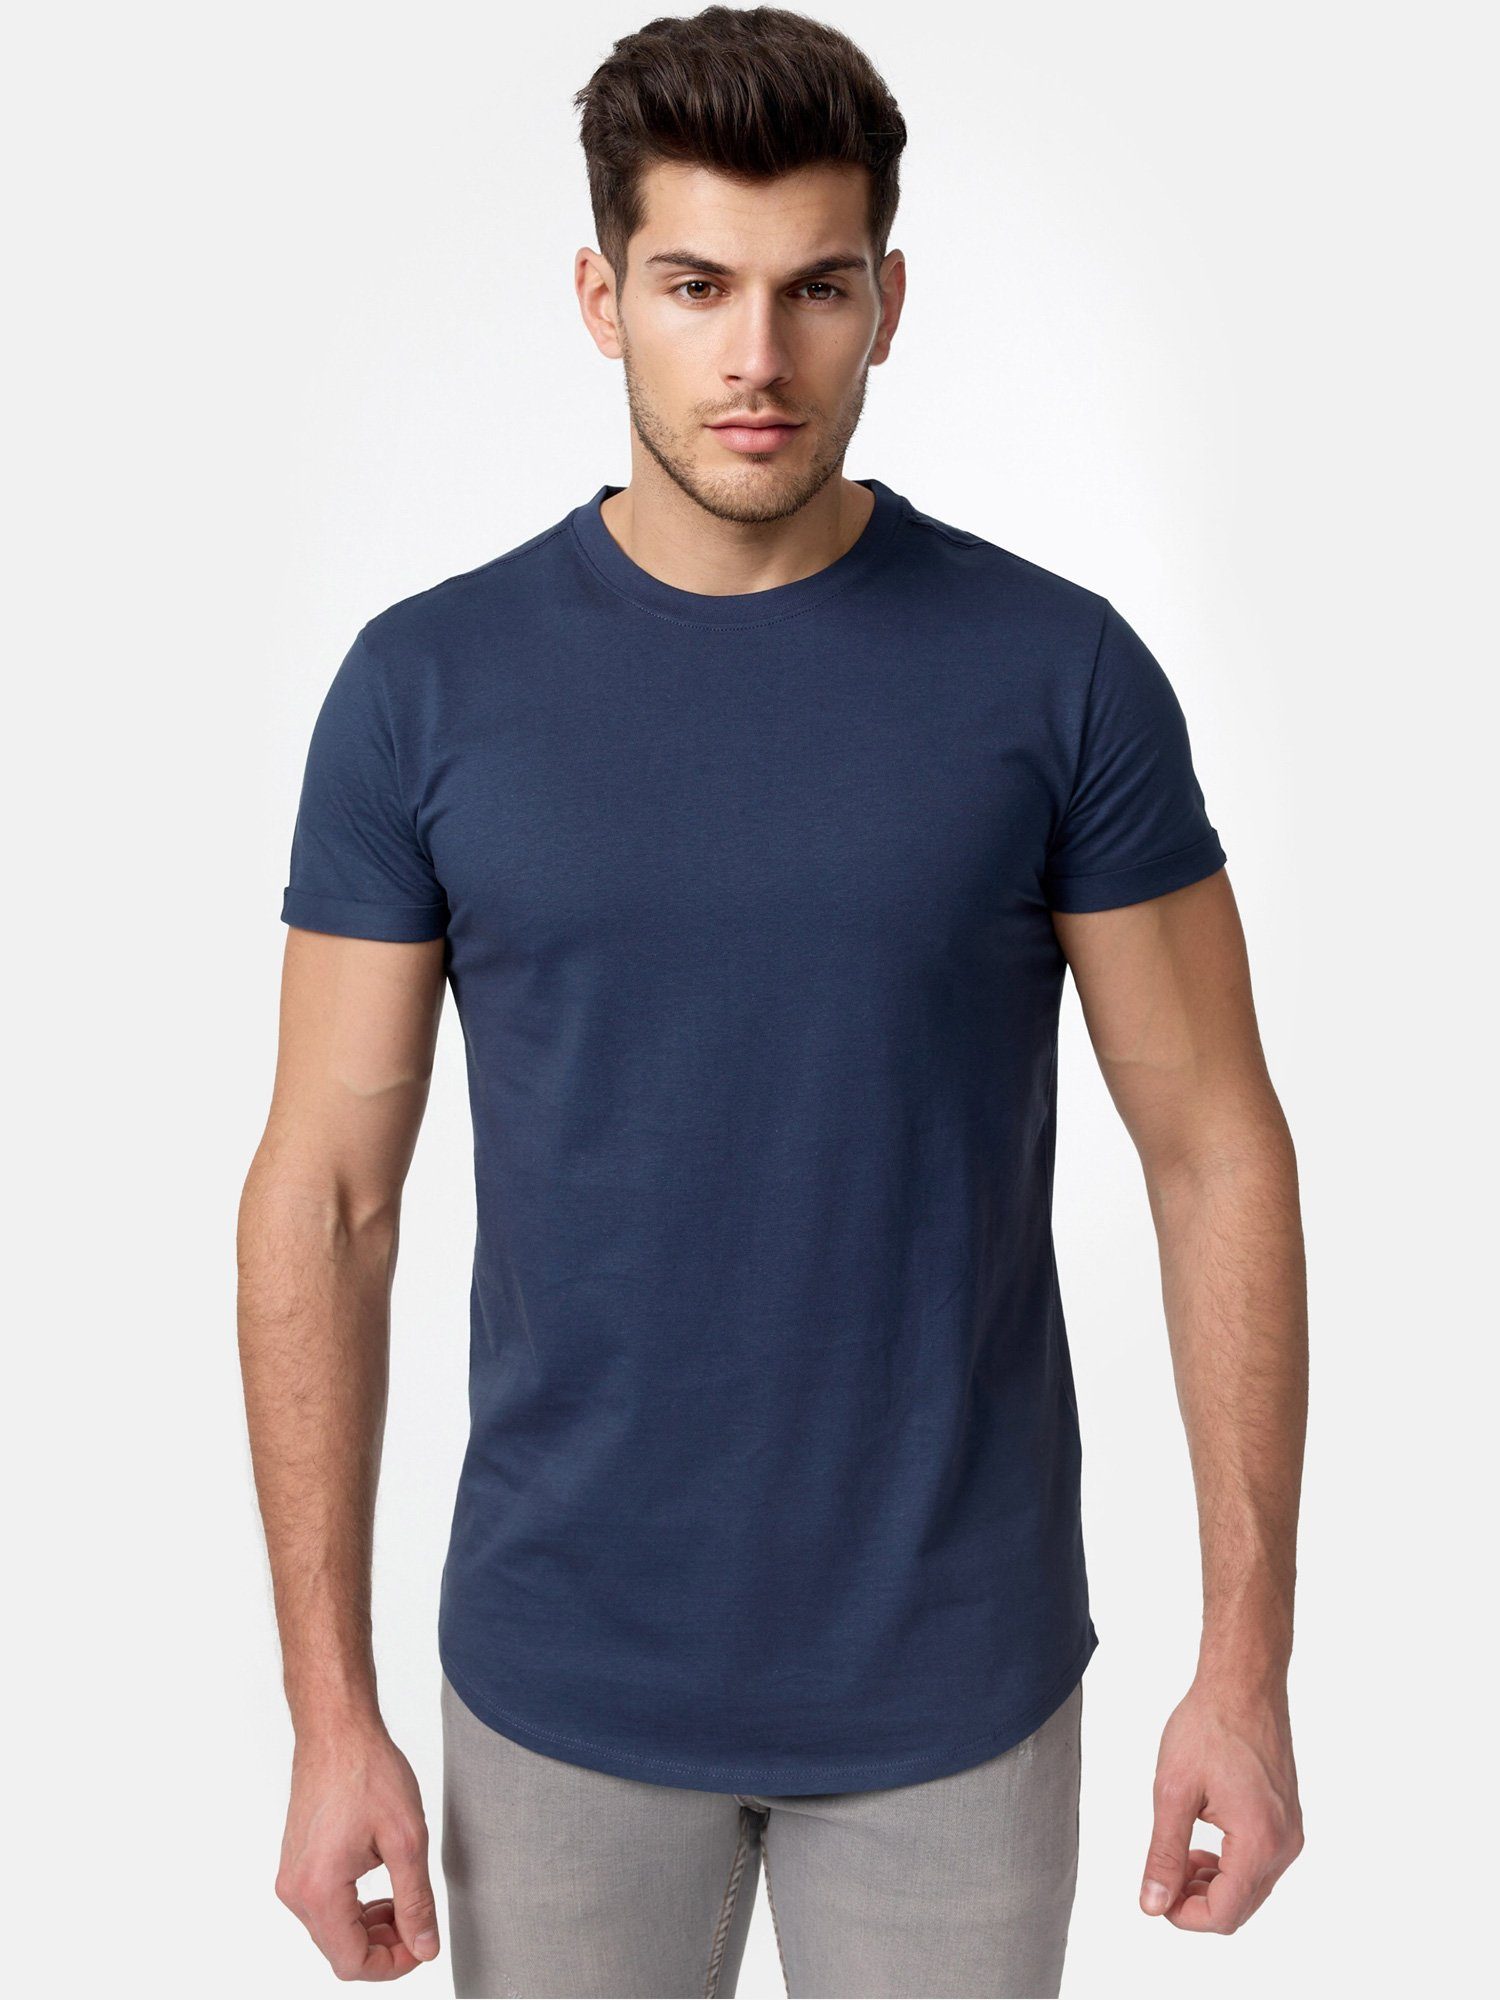 Tazzio Herren Basic navy E105 Rundhalsshirt T-Shirt